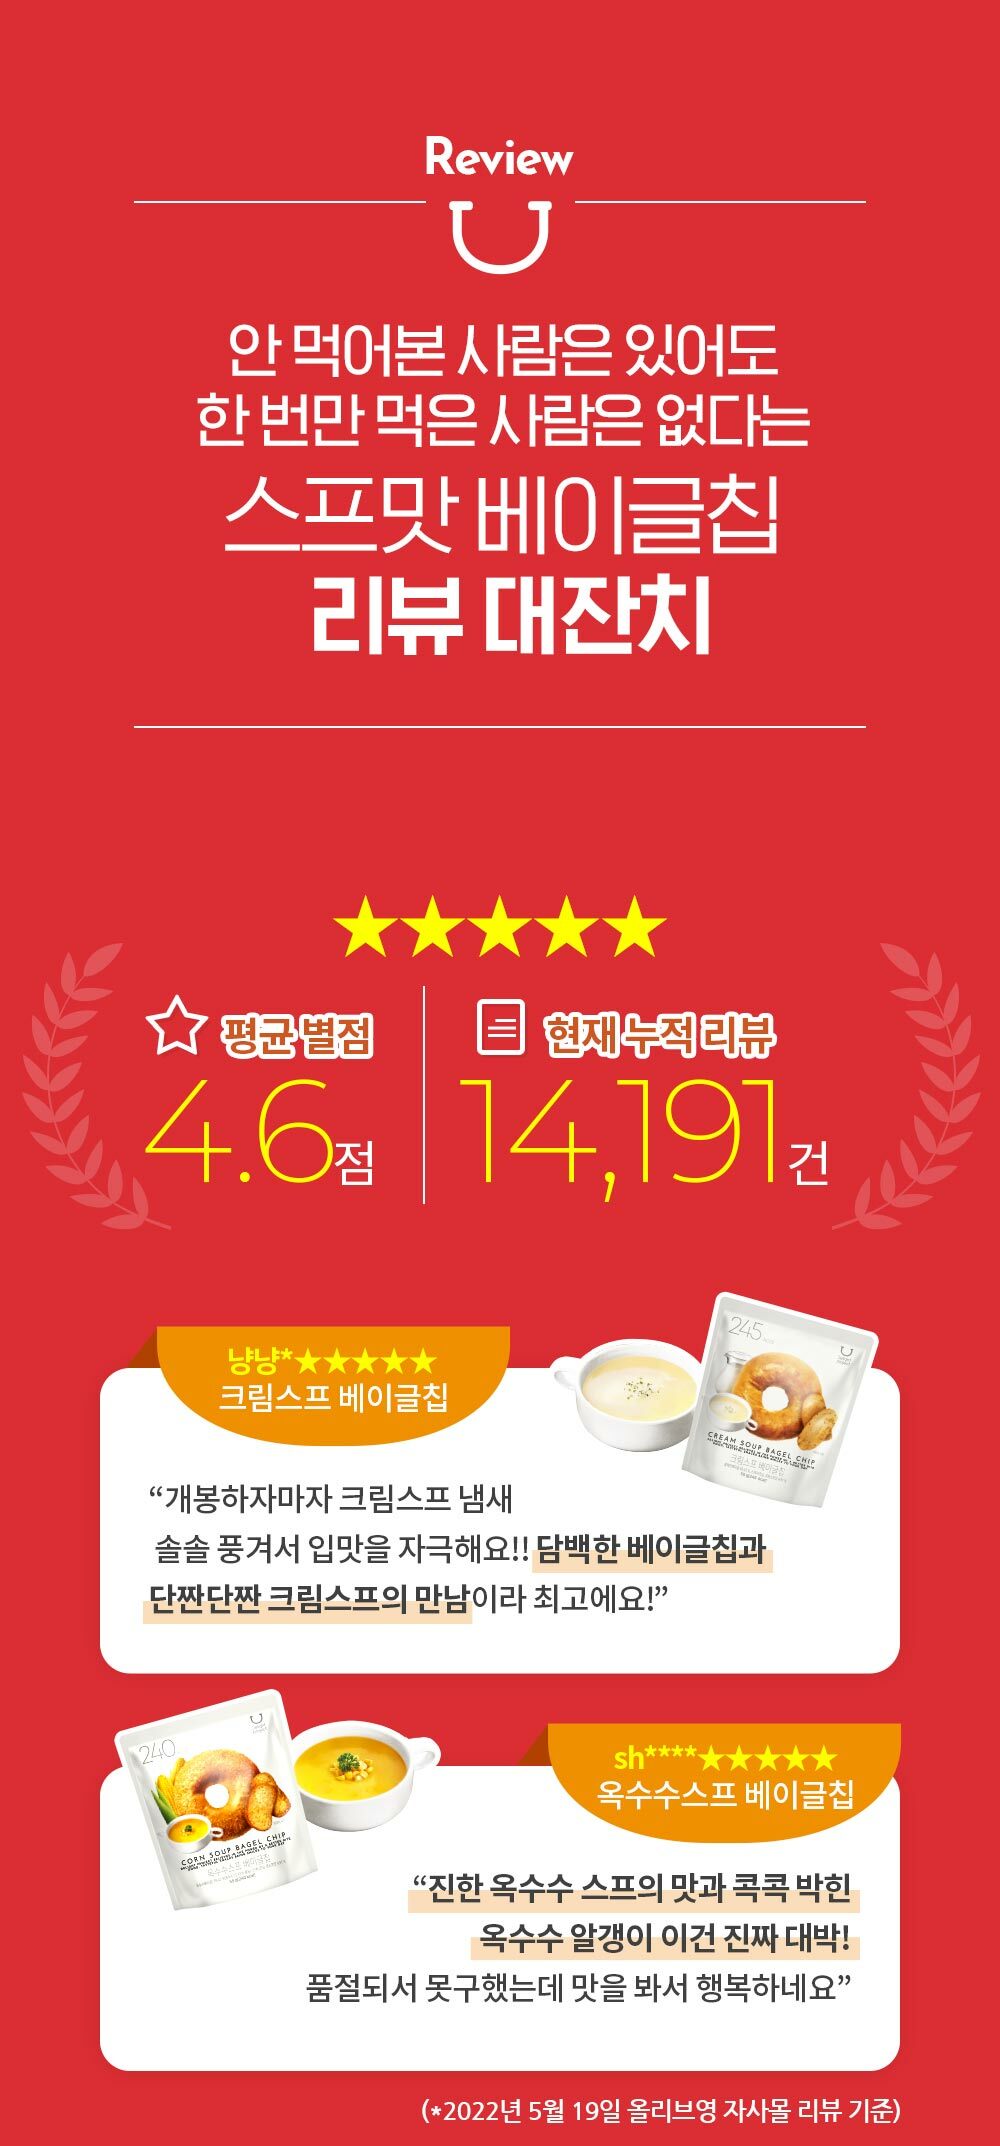 韓國食品-[Delight Project] Bagel Chip (Cream Soup) 55g